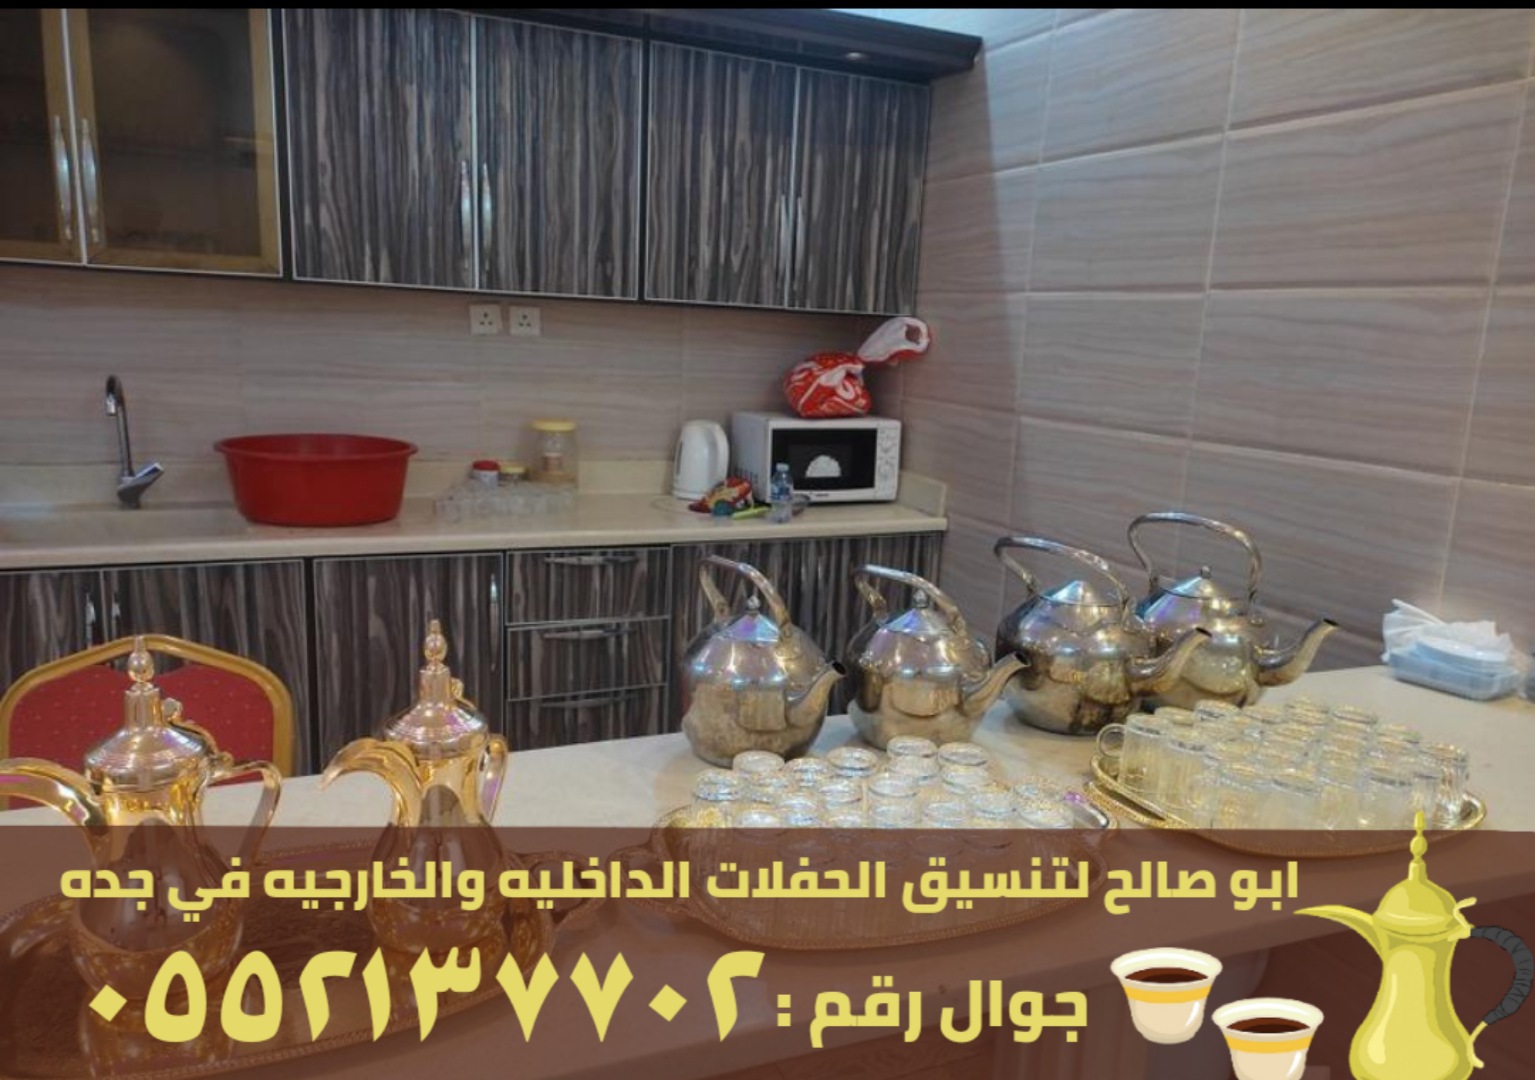 مباشرين قهوه و مباشرات في جدة,0552137702